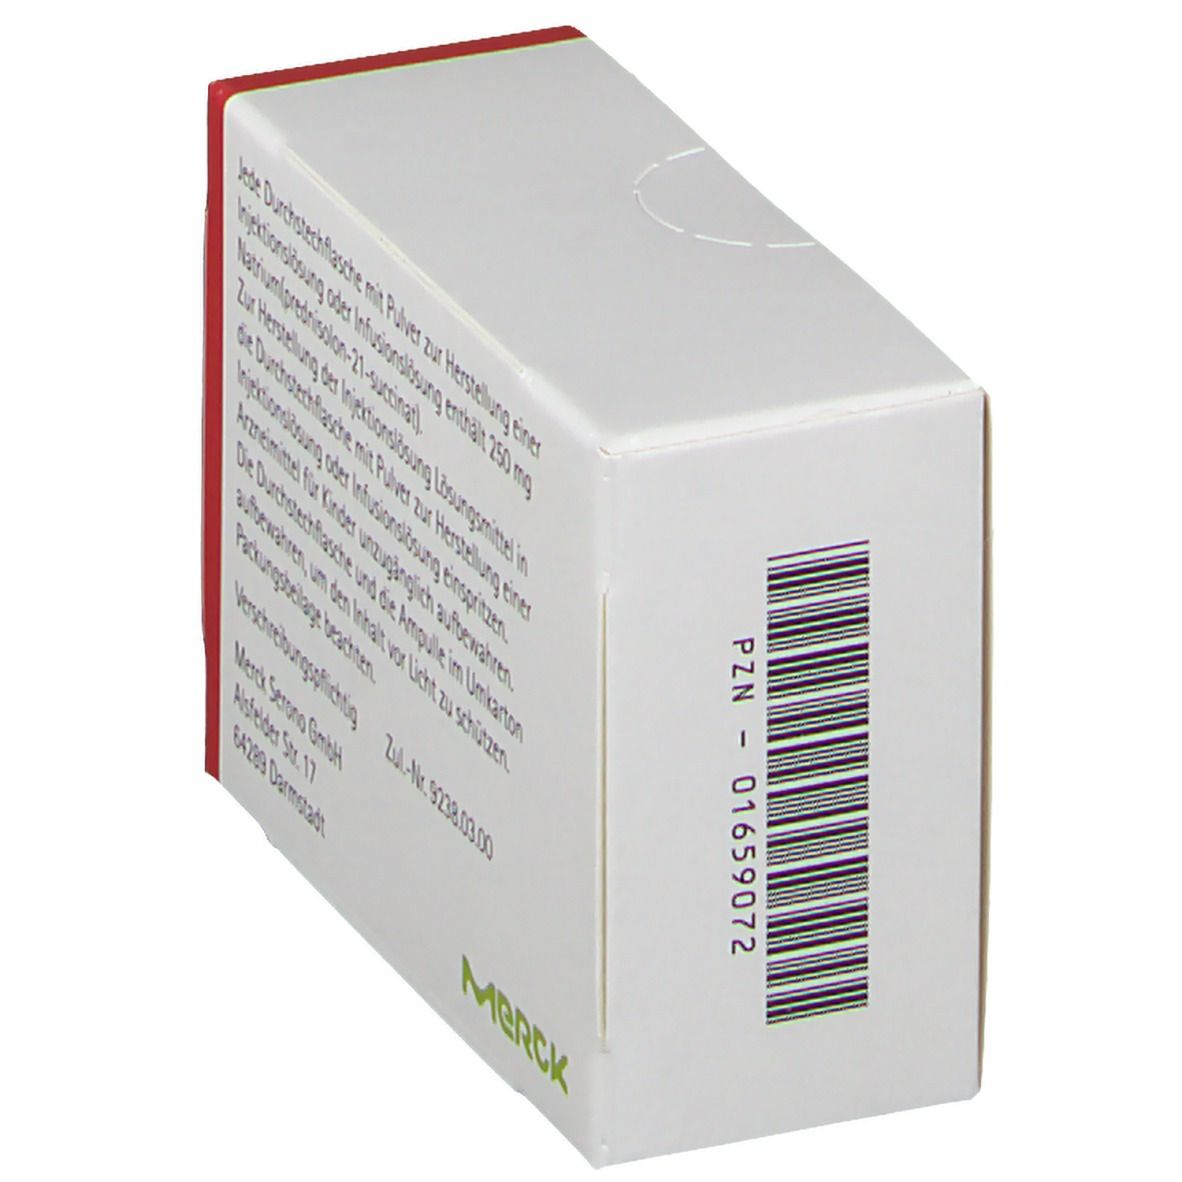 Solu-Decortin® H 250 mg